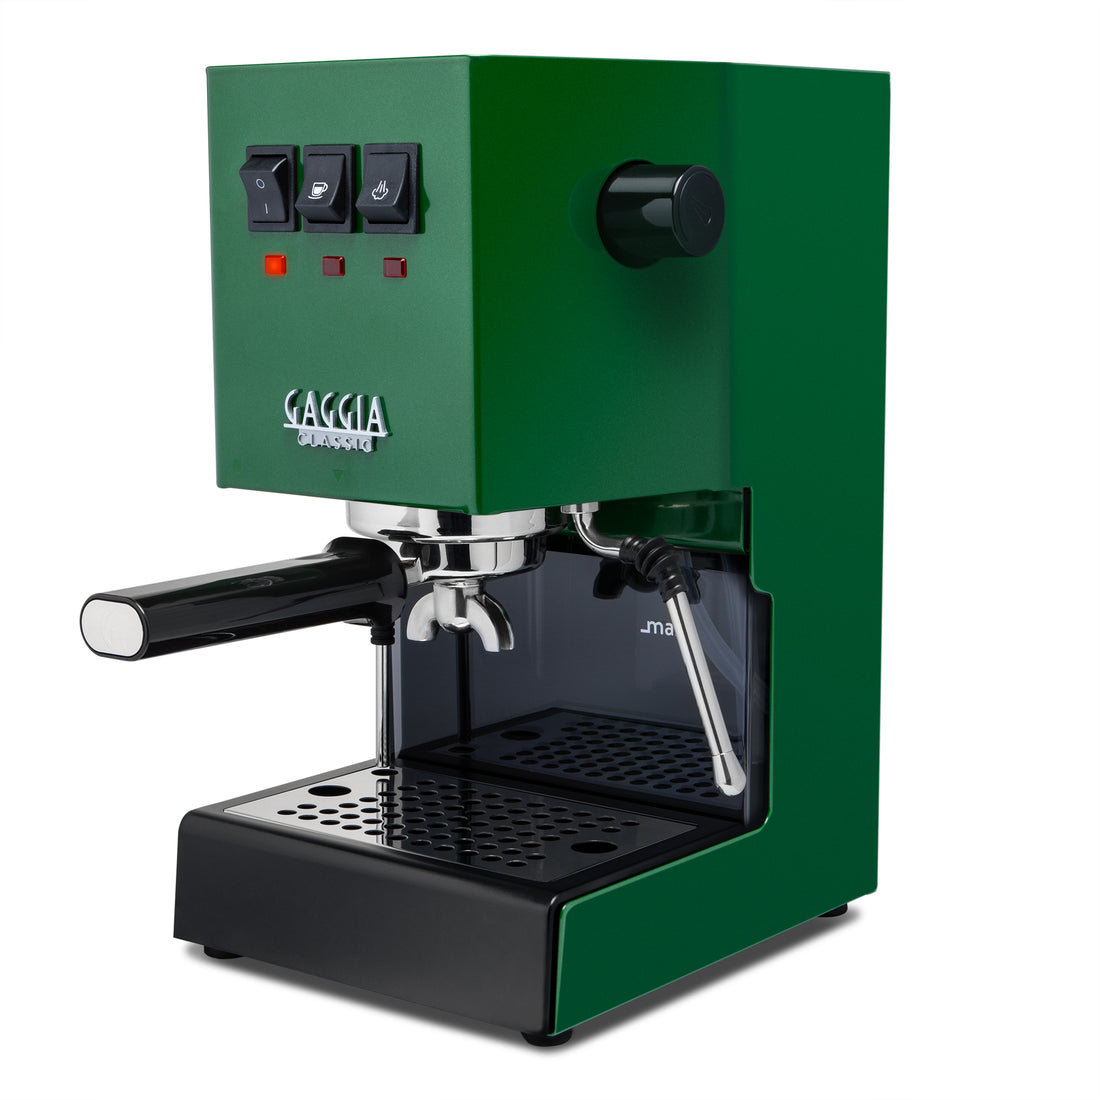 Gaggia Classic Evo Pro Espresso Machine in Jungle Green